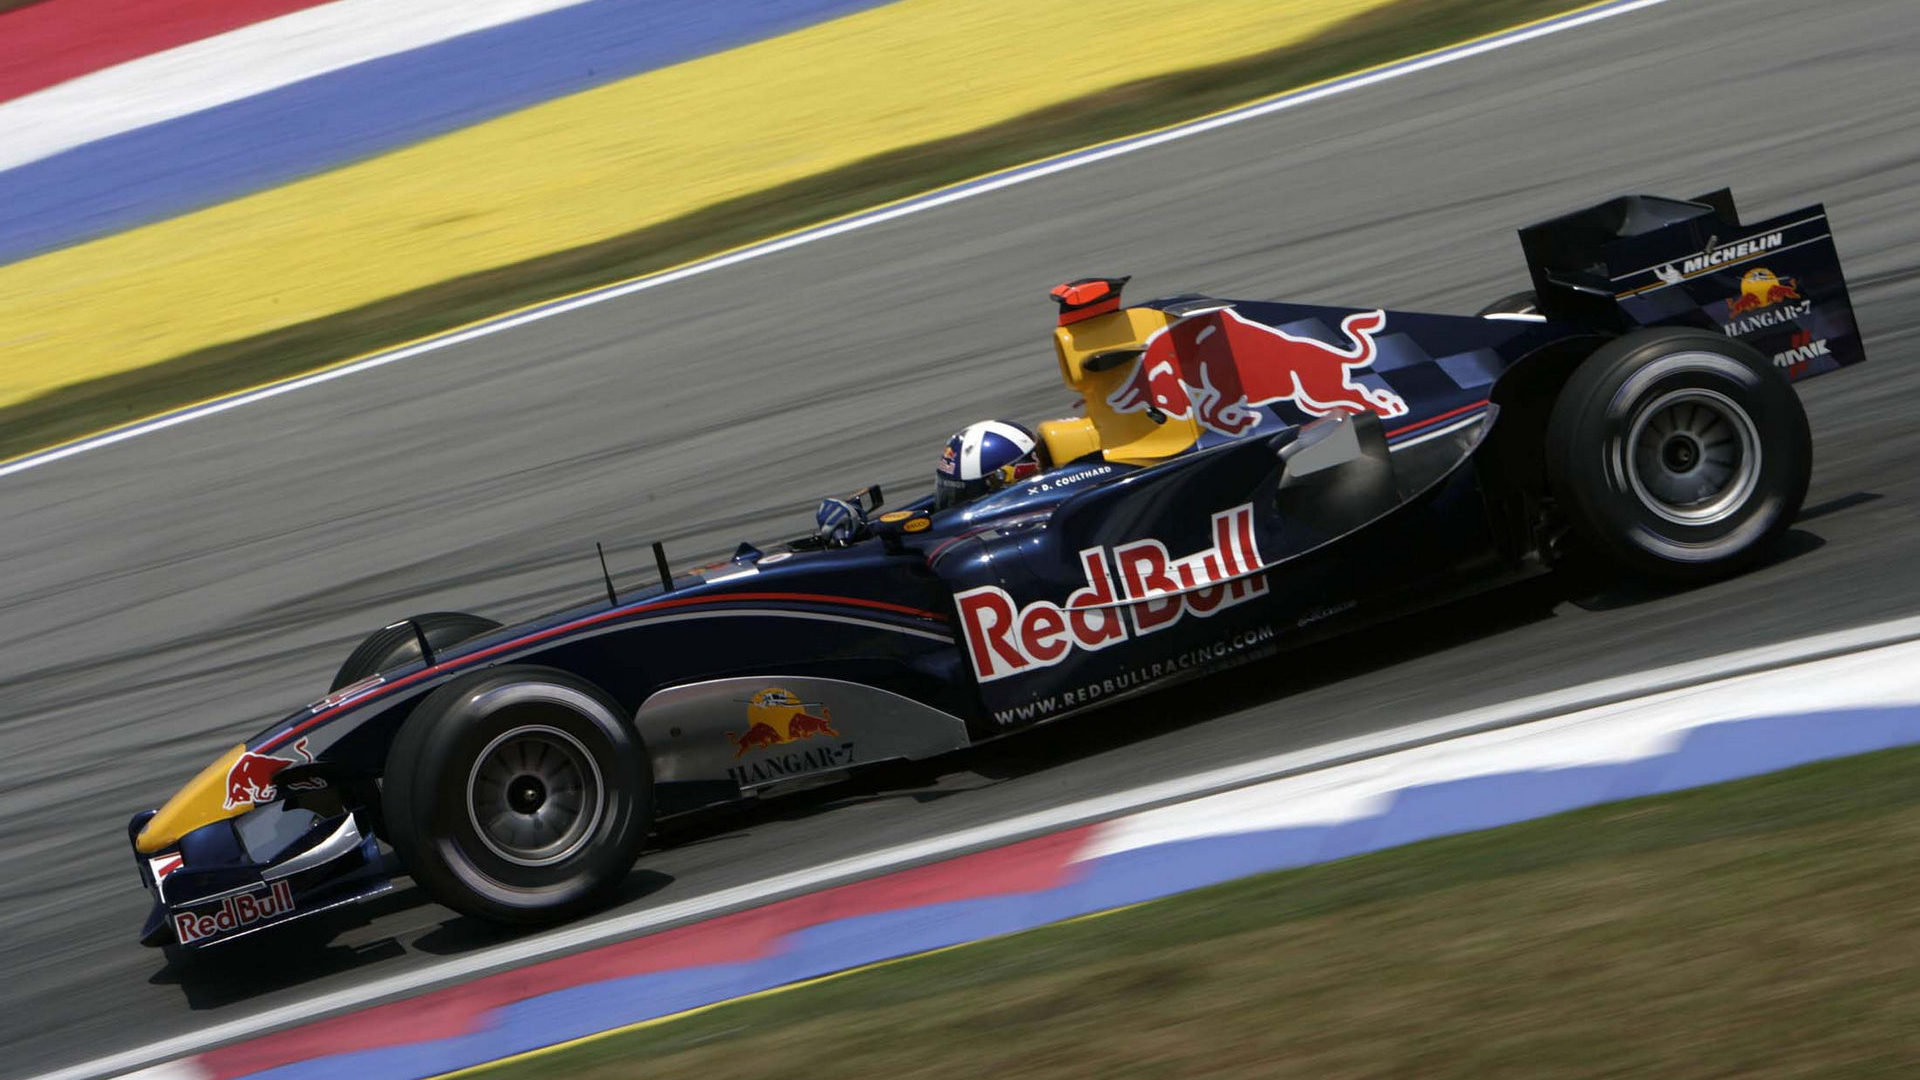 Fonds d'écran HD 2005 Grand Prix de Formule 1 de Malaisie | F1-